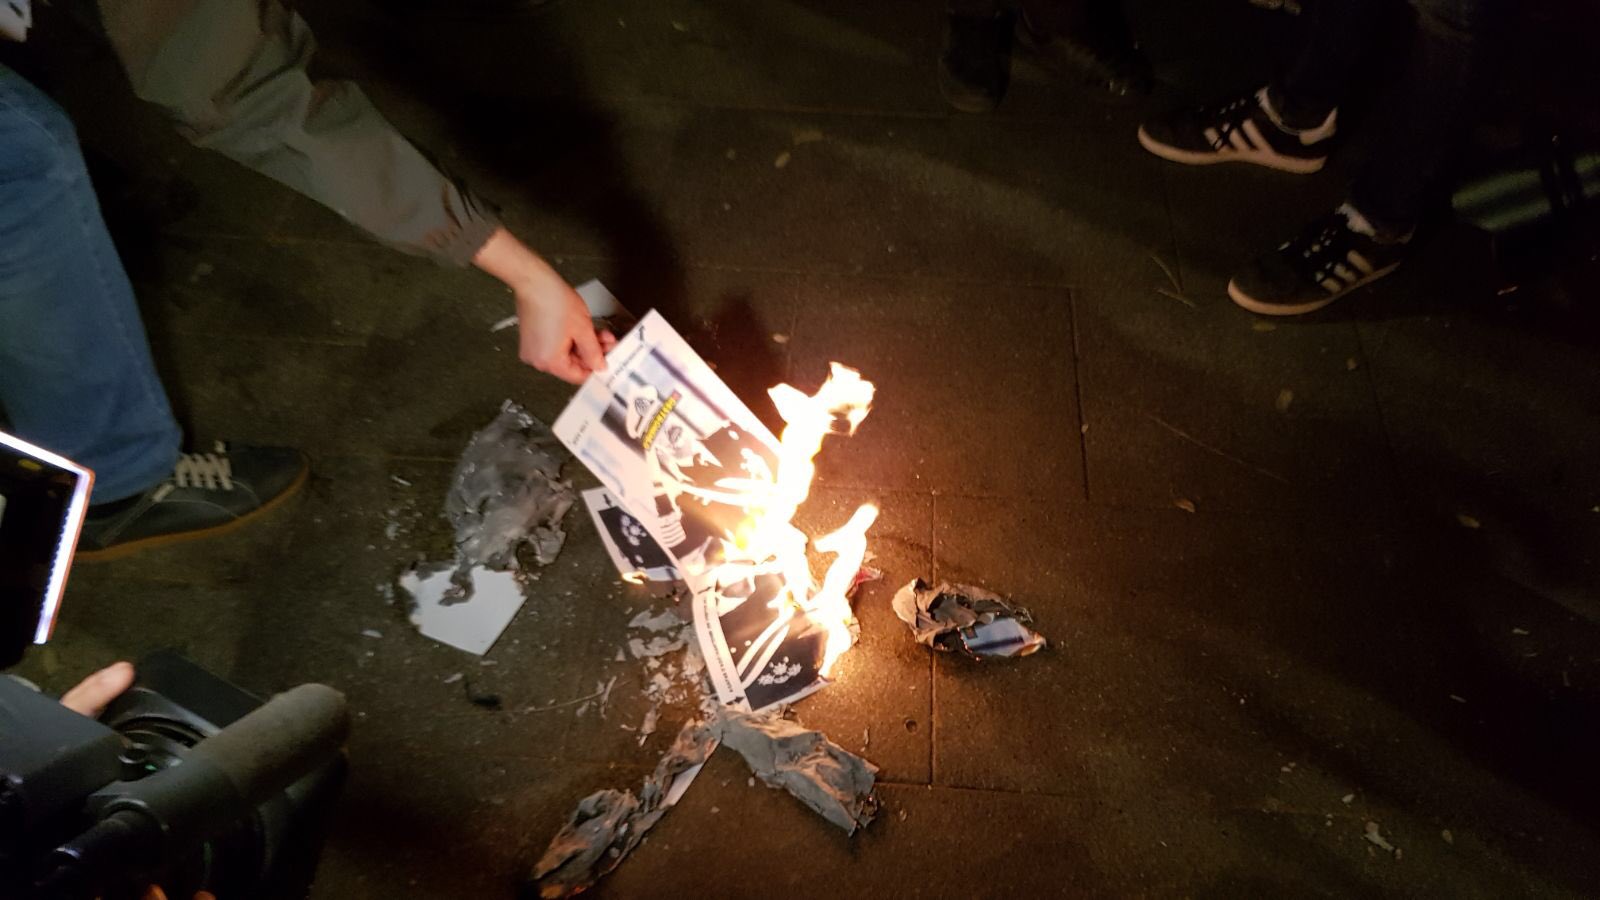 Cremen fotografies del Rei a Barcelona i Sabadell